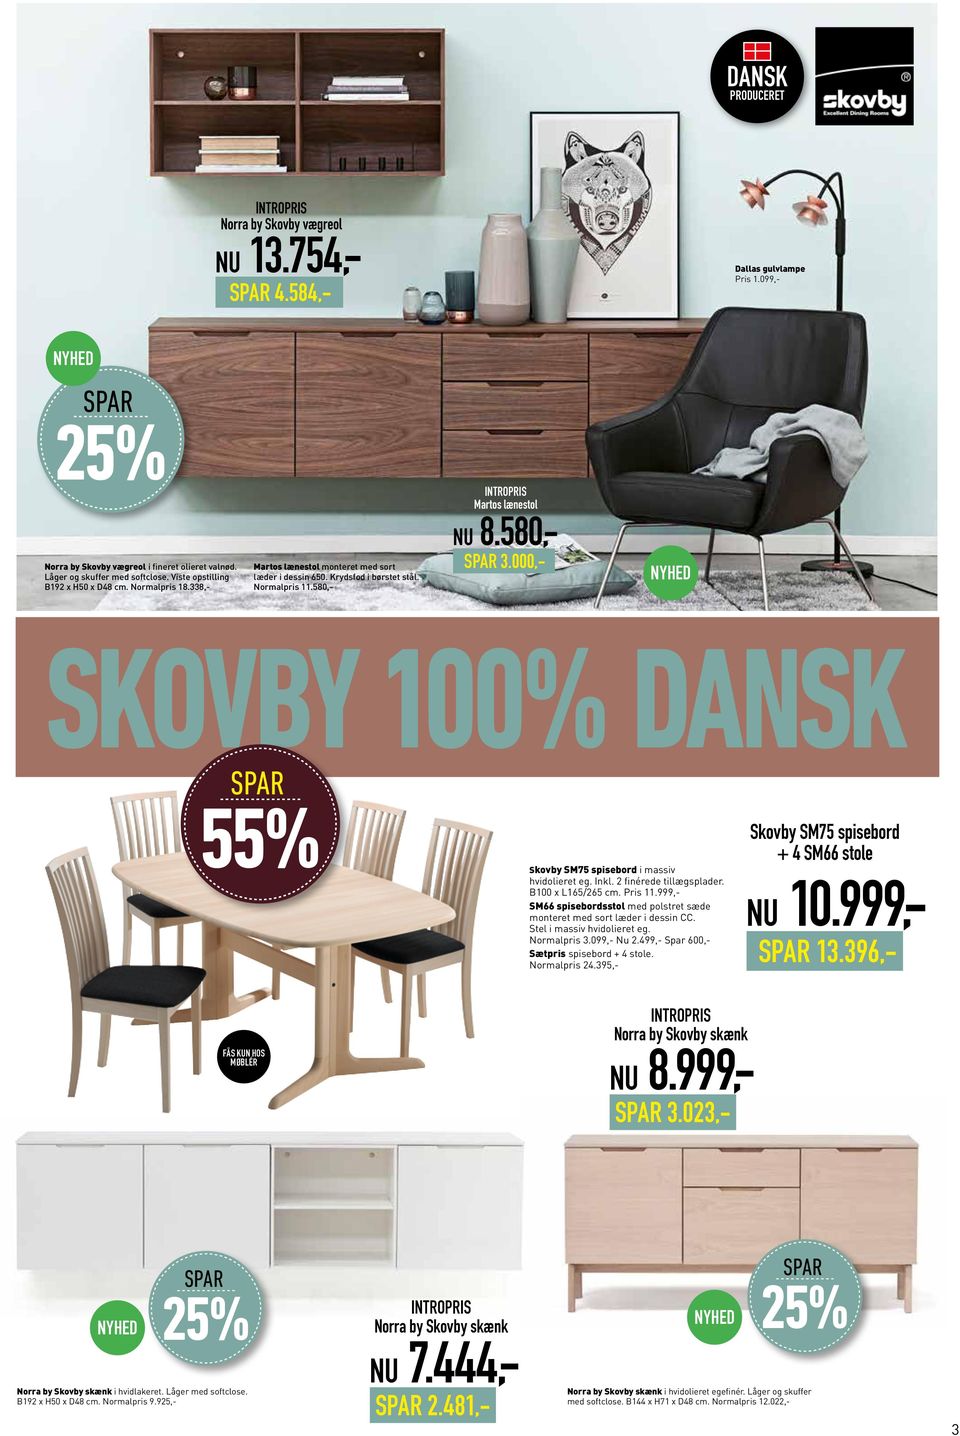 000,- Skovby 100% 55% Skovby SM75 spisebord i massiv hvidolieret eg. Inkl. 2 finérede tillægsplader. B100 x L165/265 cm. Pris 11.